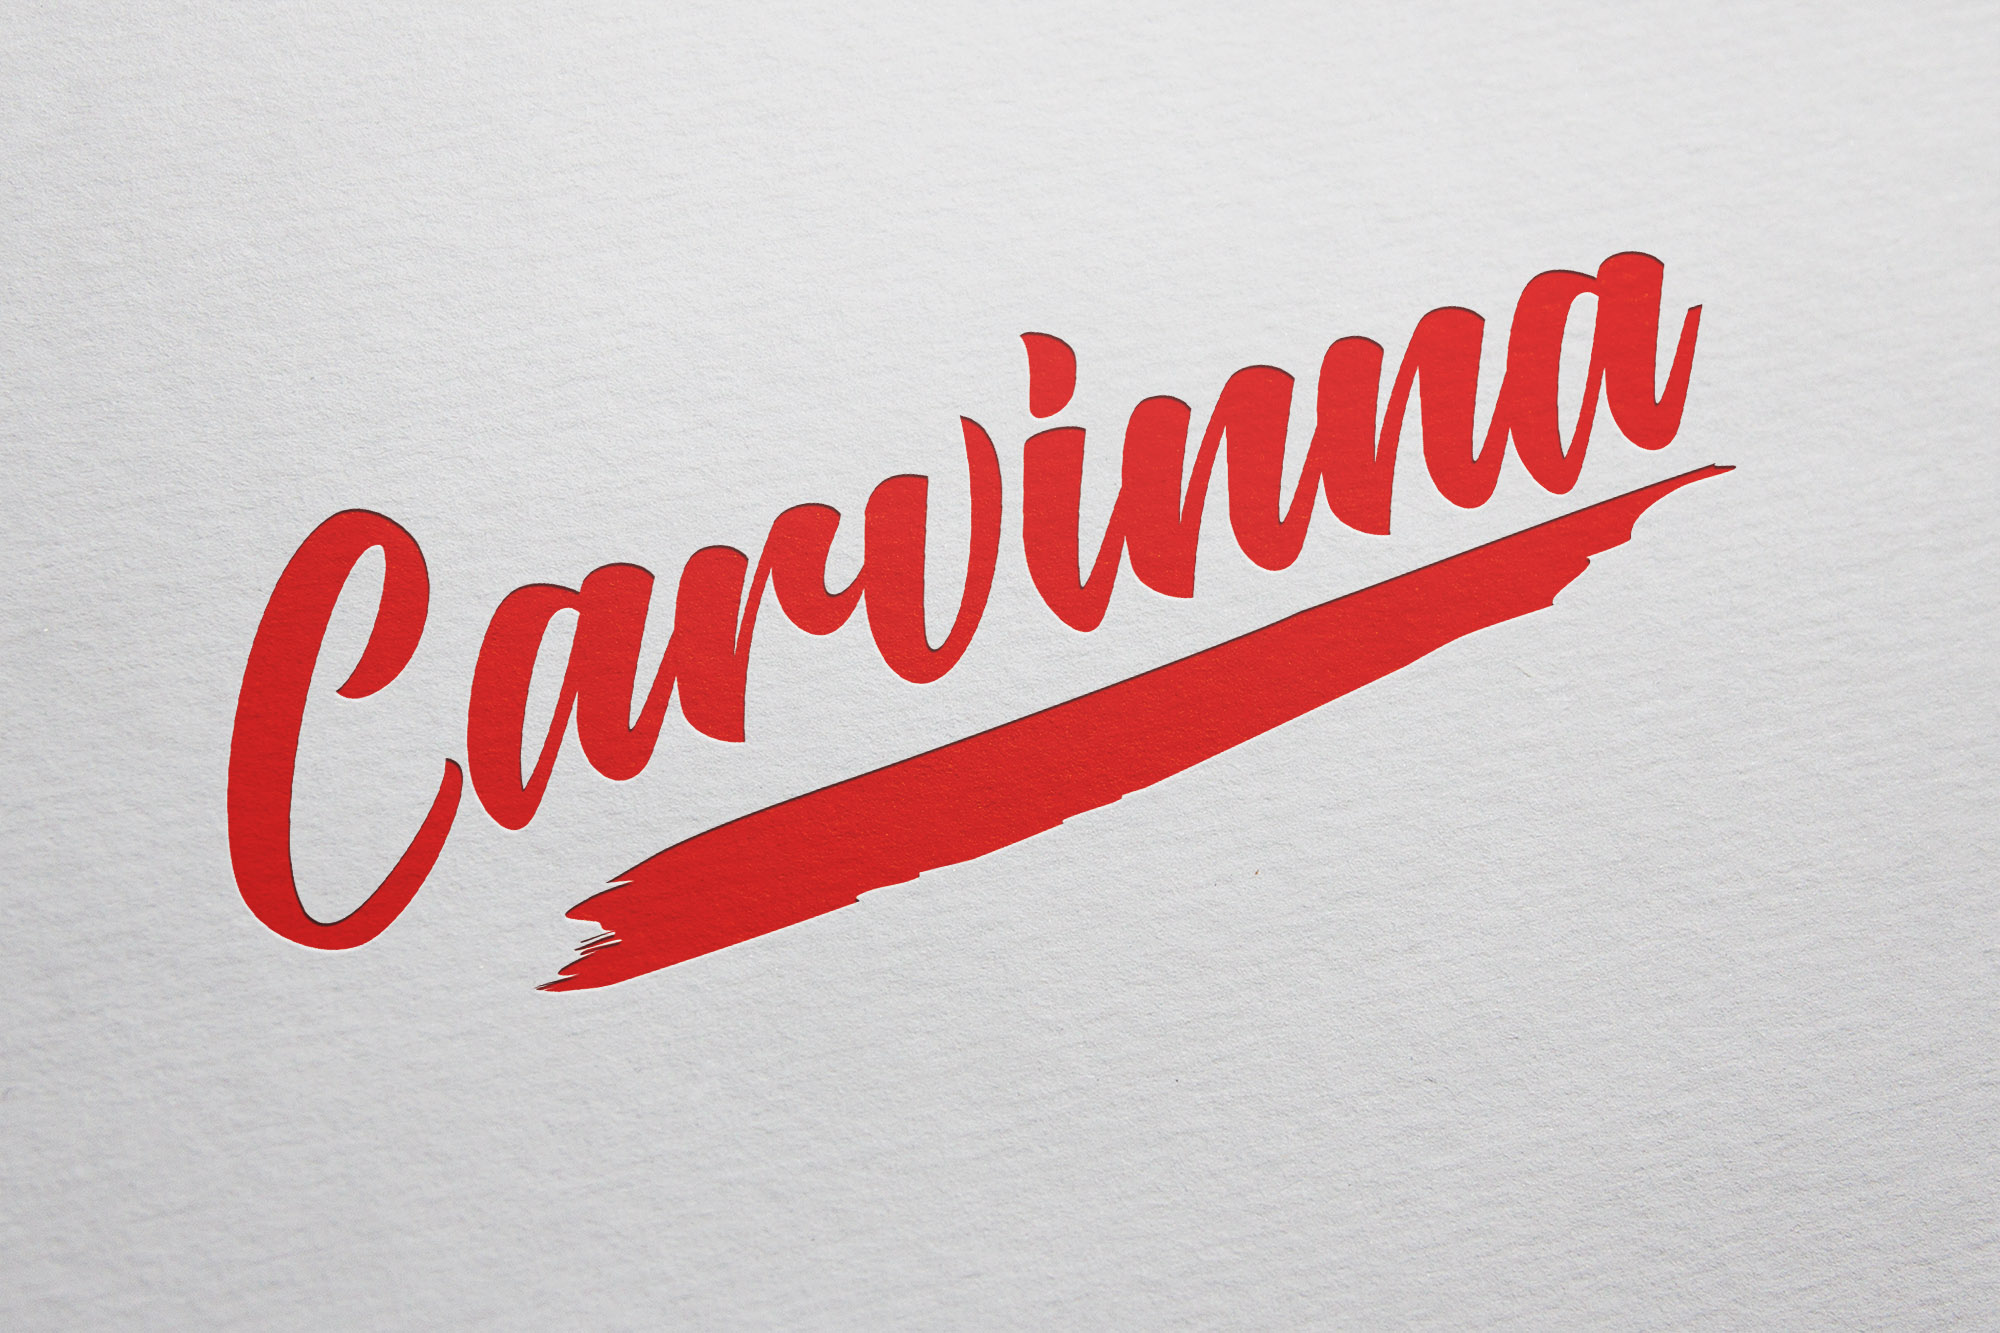 carvinna logo design